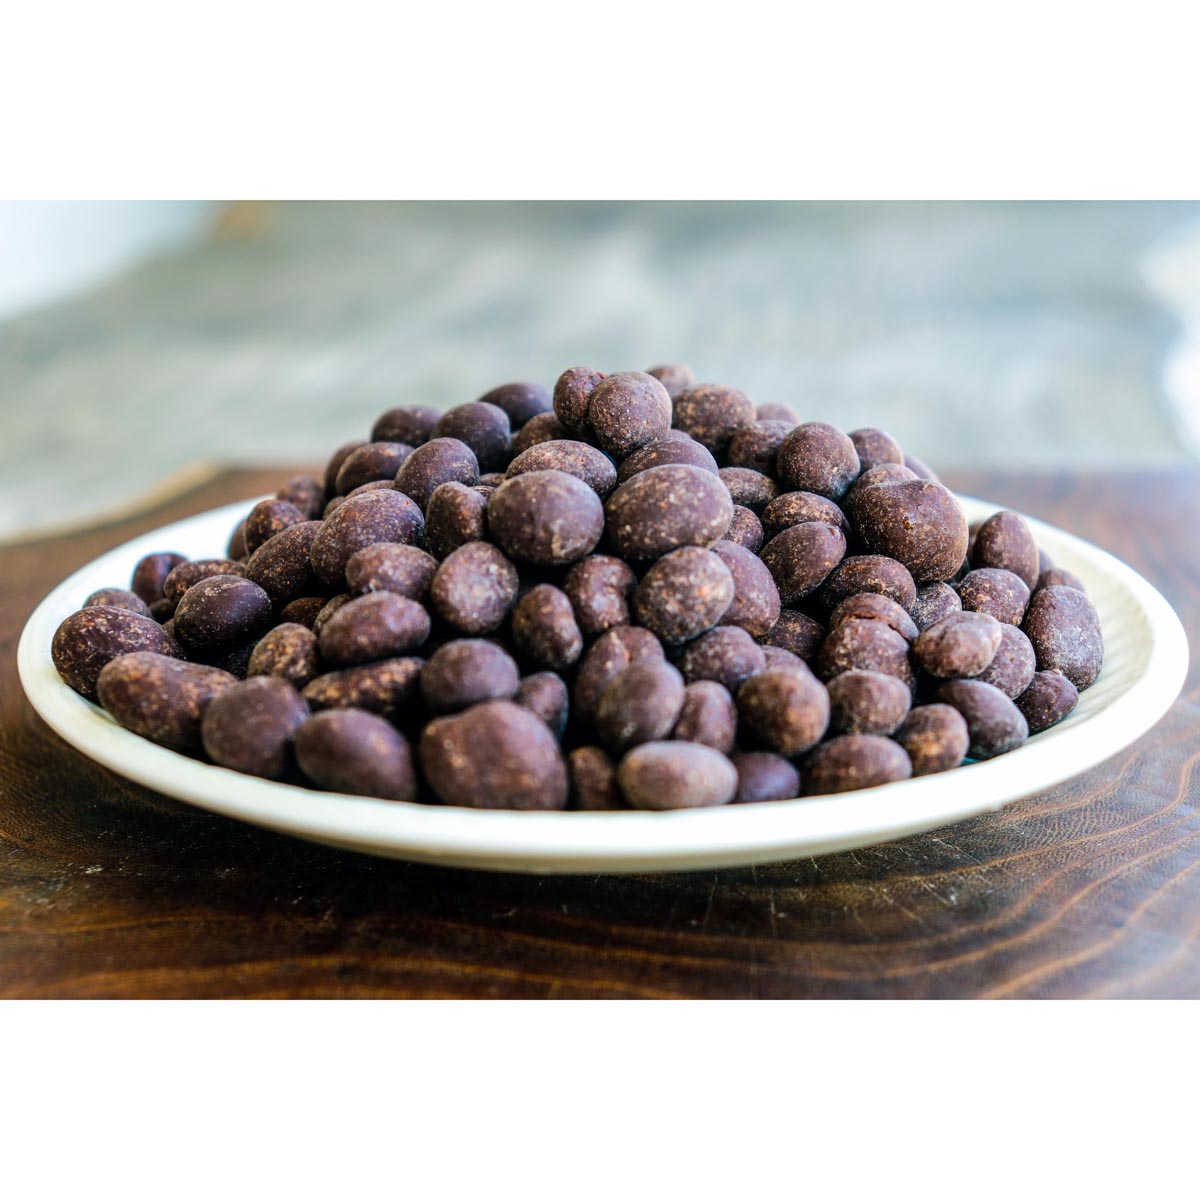 60% Chocolate Covered Raisins